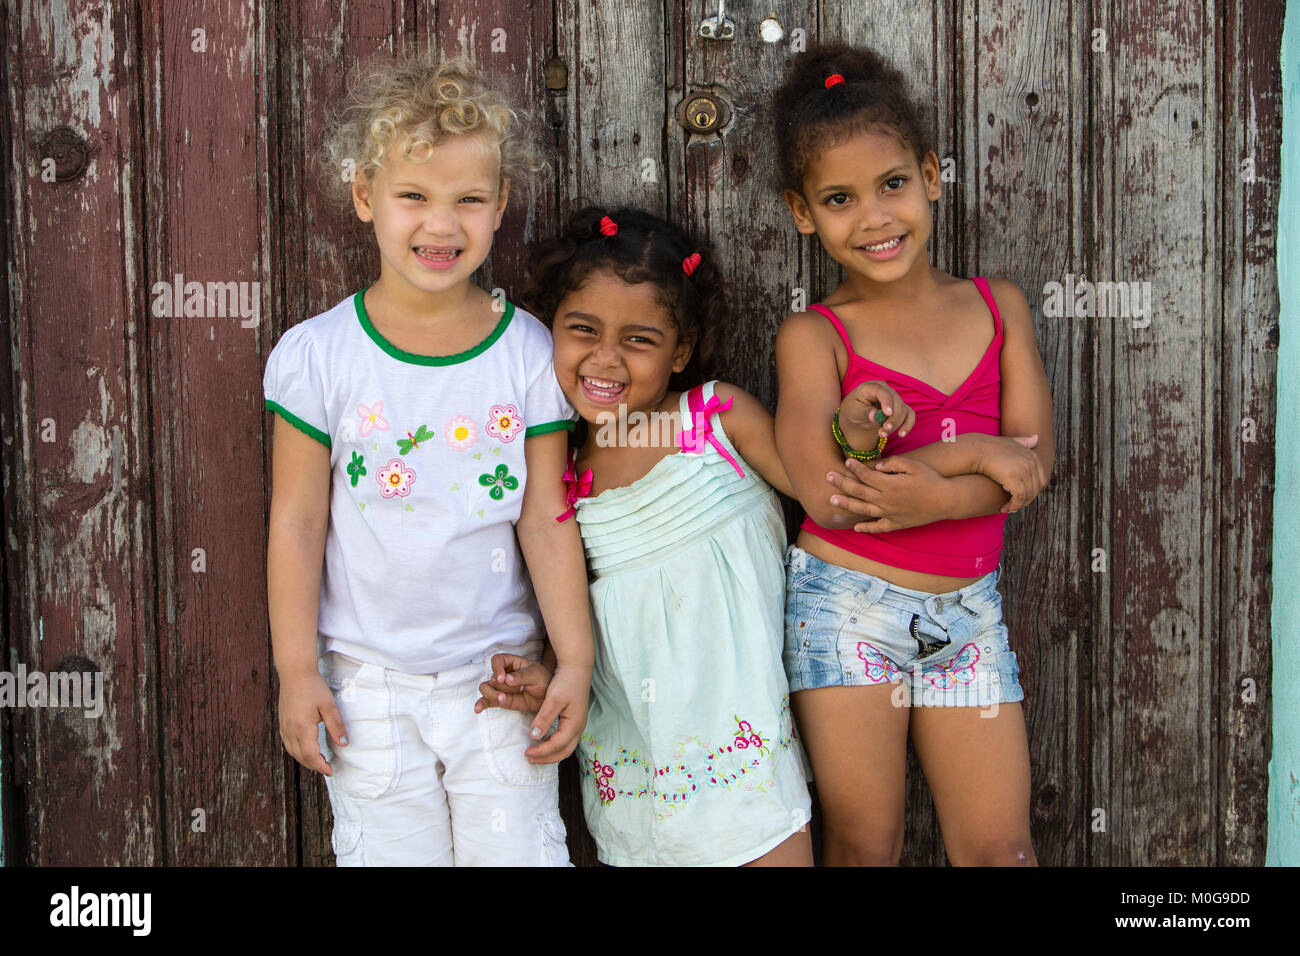 Young girls posing in Regla, Cuba Stock Photo